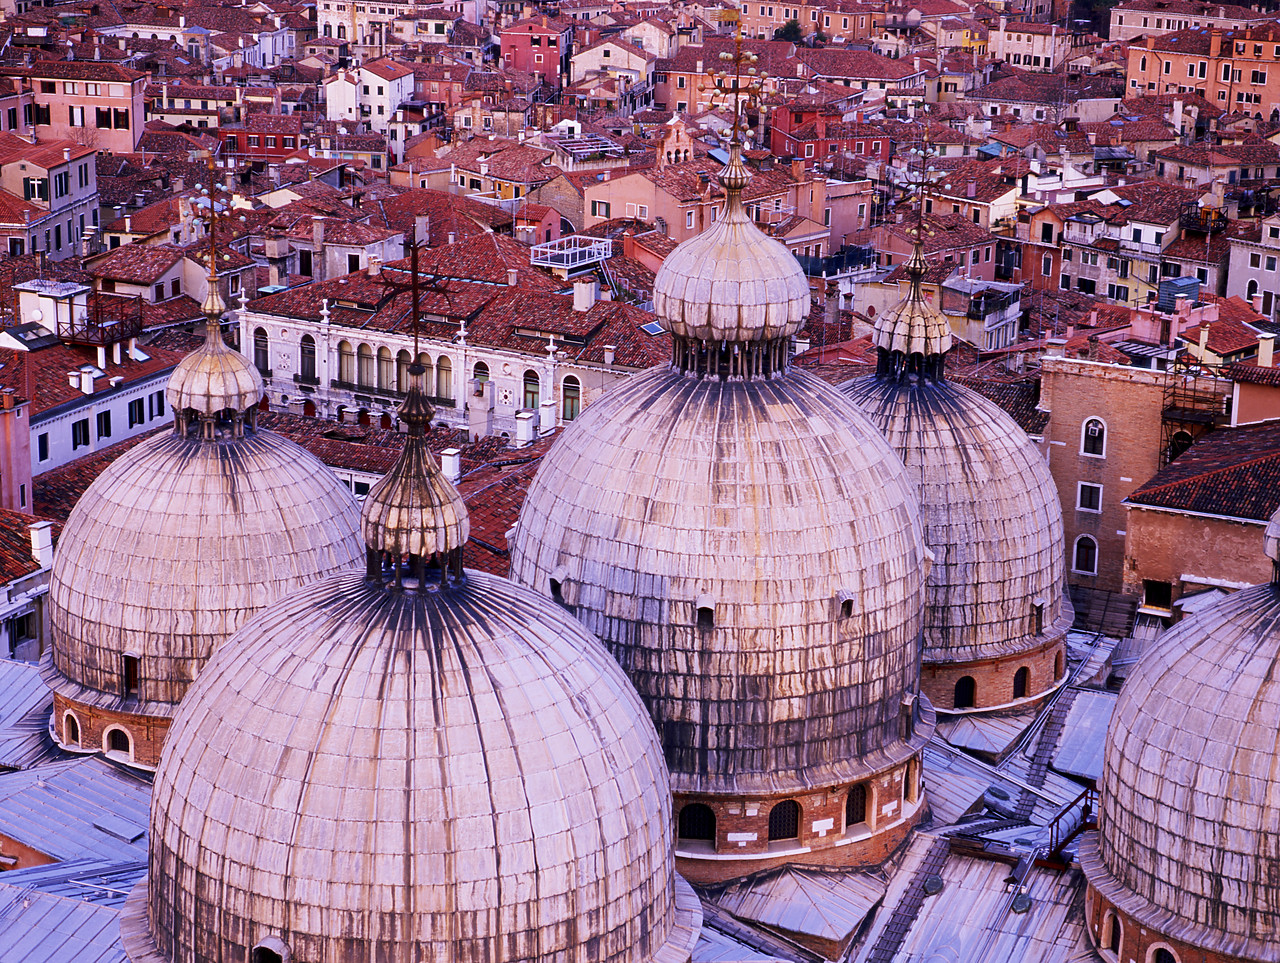 #990089-2 - Domes of St. Mark's Basilica, Venice, Italy